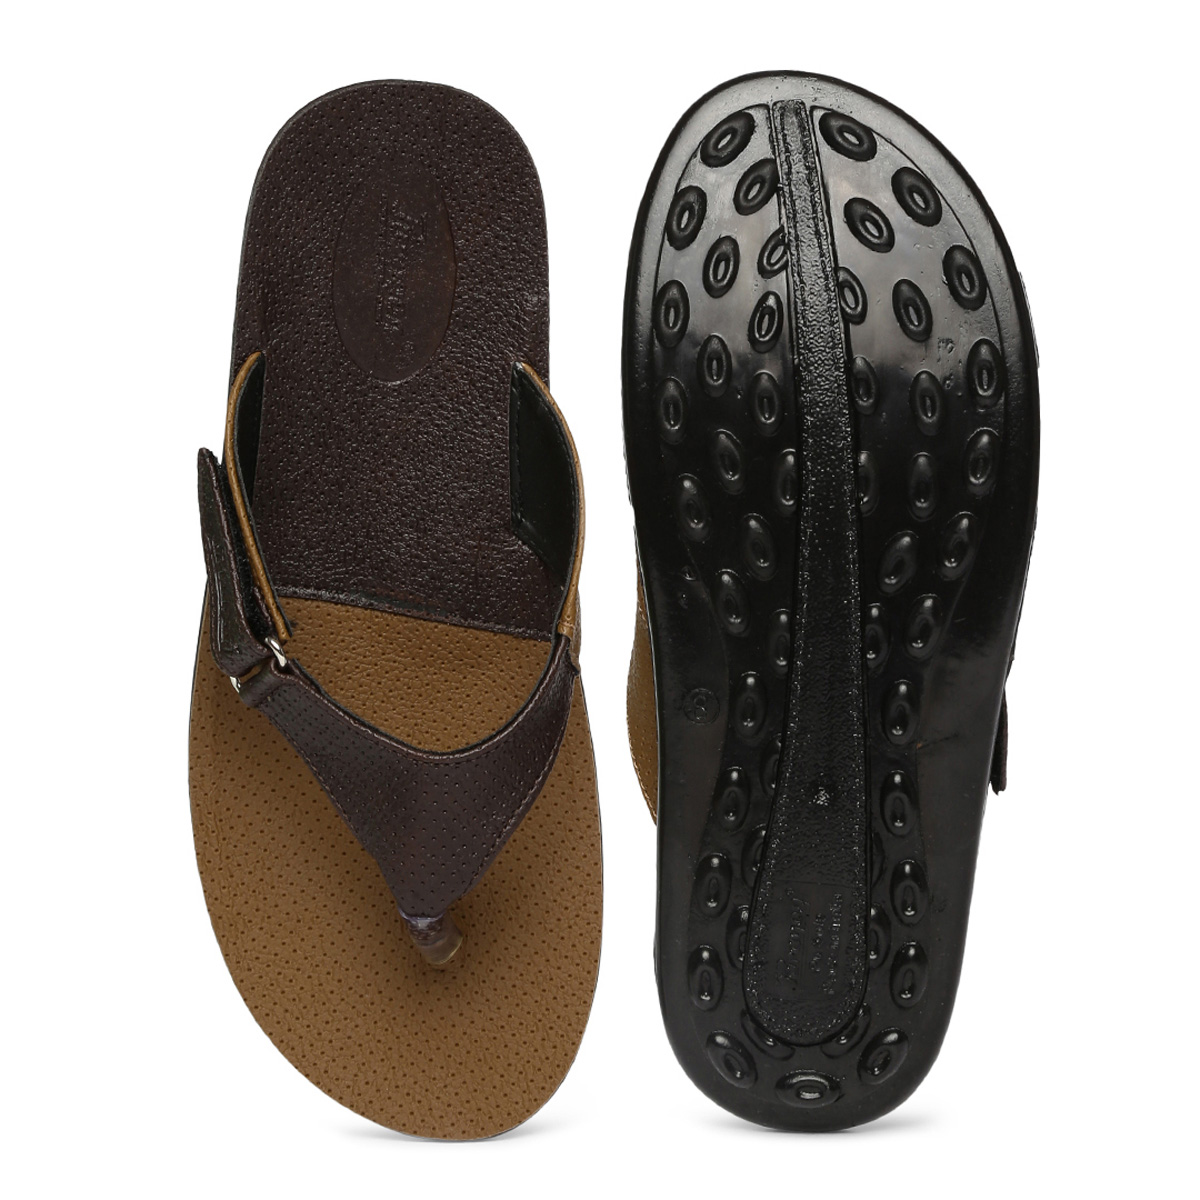 Buy Paragon-Vertex Men's Brown Flip Flops Online @ ₹269 from ShopClues